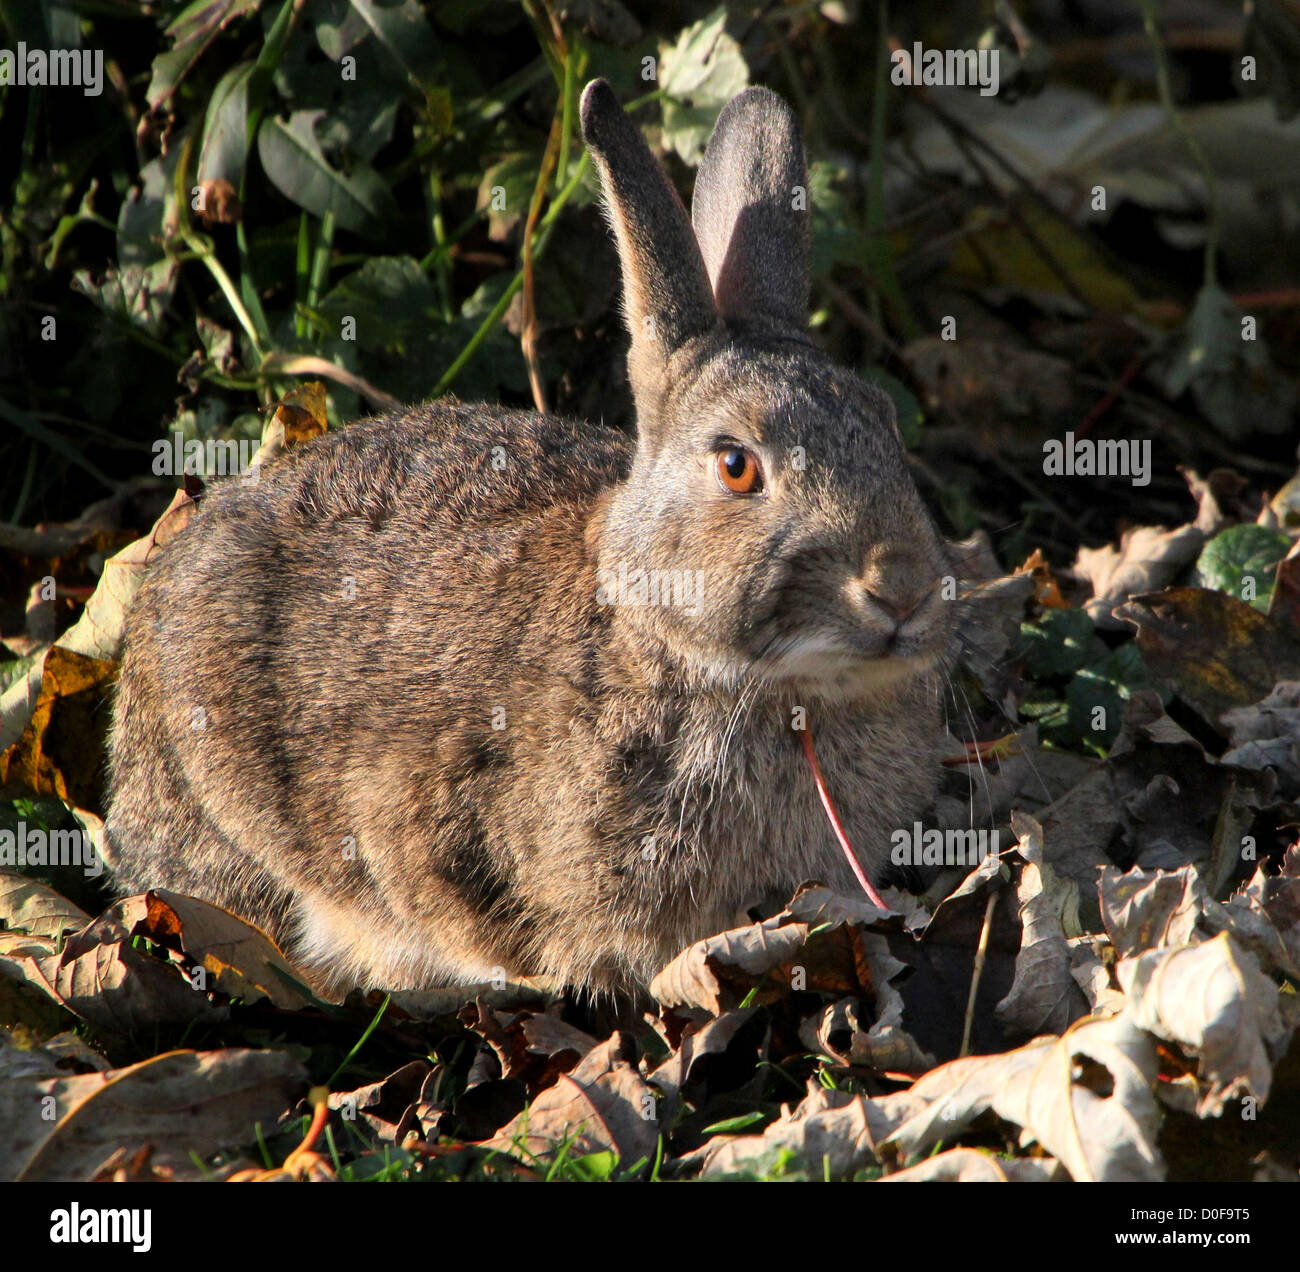 Portrait en gros plan d'un lapin sauvage posant parmi les feuilles d'automne avec le soleil attraper son oeil Banque D'Images